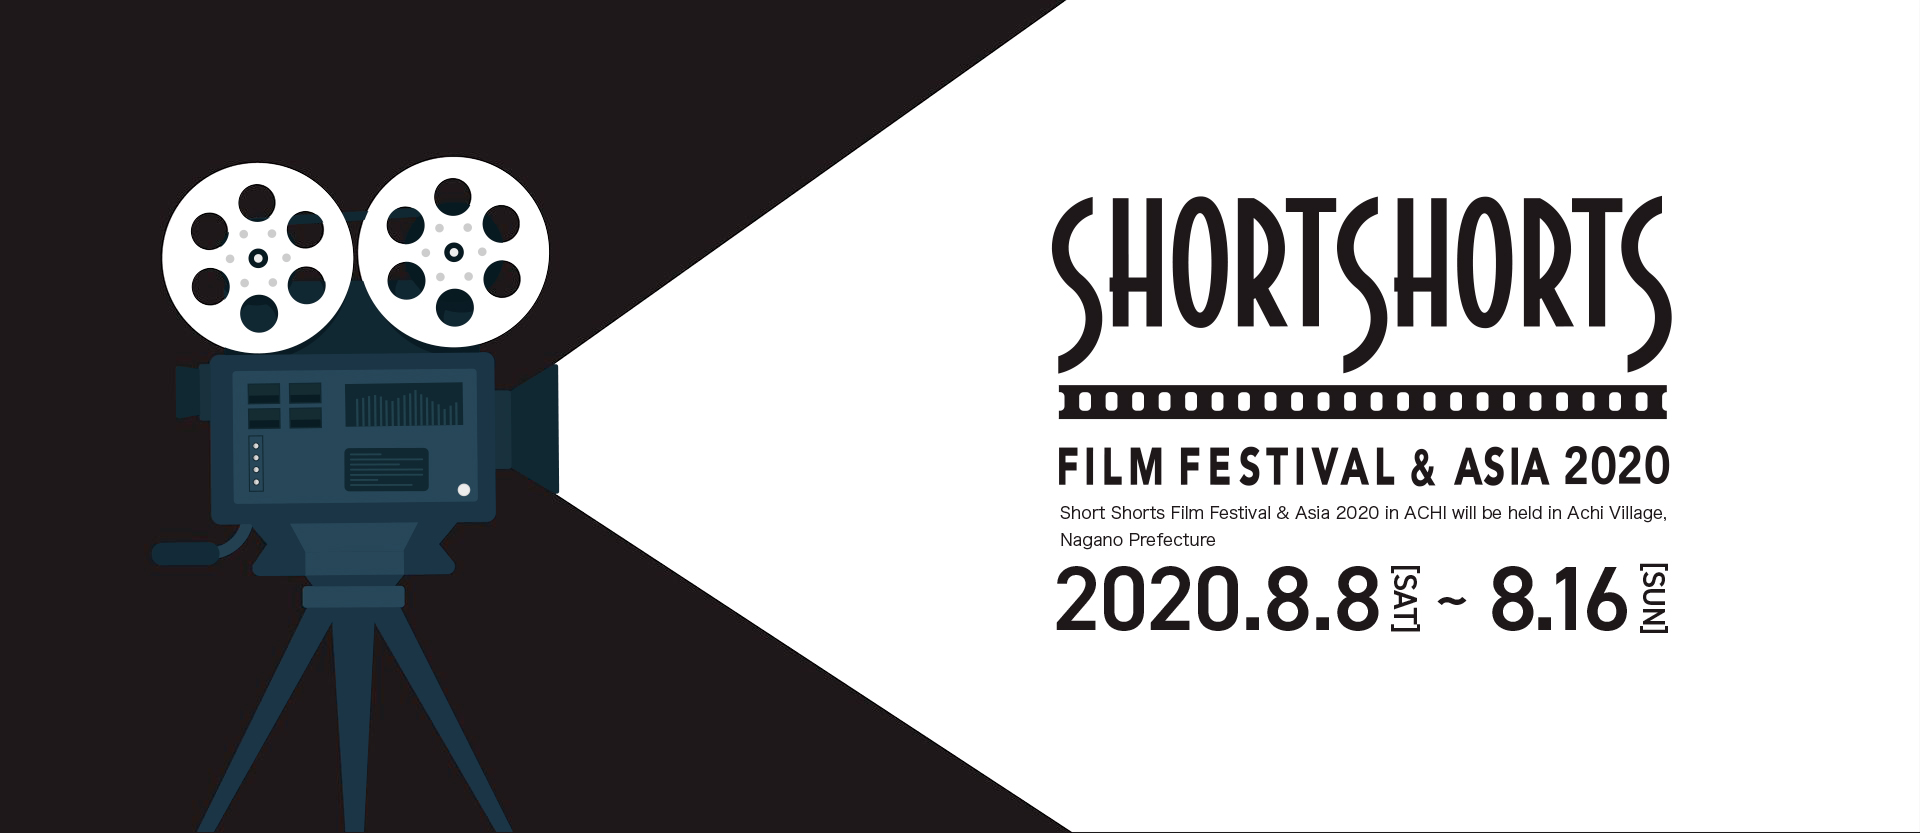 SHORTSHORTSショートショート フィルムフェスティバル ＆ アジア 2020 in 阿智 -日本一の星空映画祭-(SSFF & ASIA 2020 in ACHI　-日本一の星空映画祭-)2020.8.8～8.16in ACHI